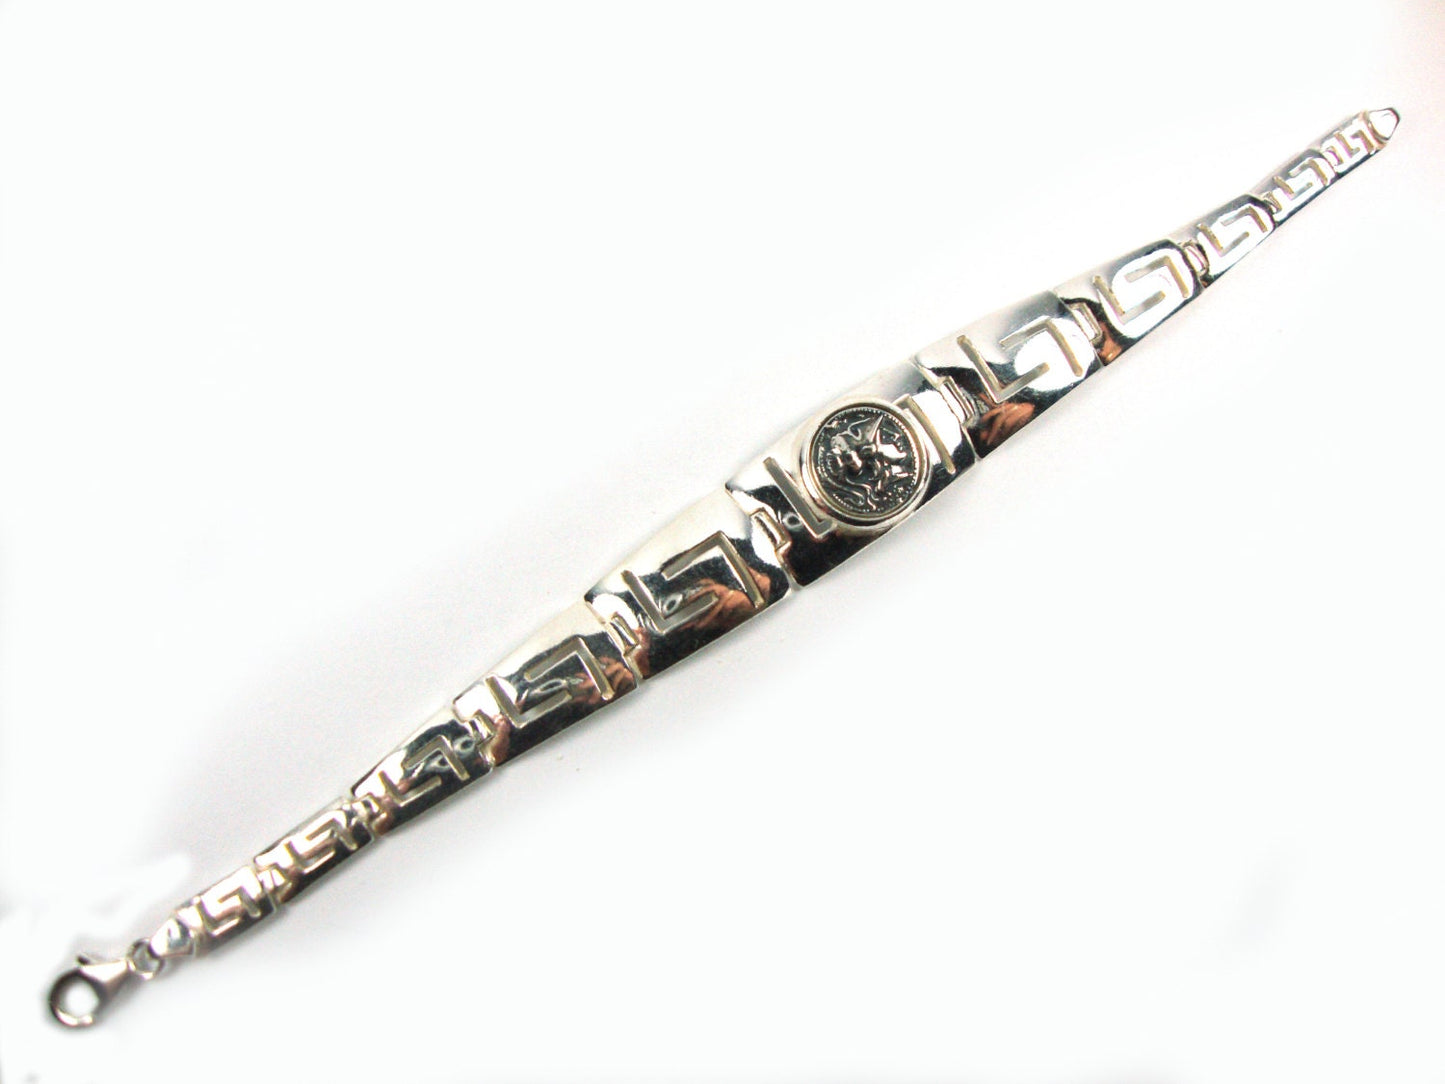 Silber griechisches Athena Armband 19cm, griechischer Schlüsselschmuck Mäander Design Münzarmband, Griechischer Silber Armband Schmuck, Bijoux Grecque,